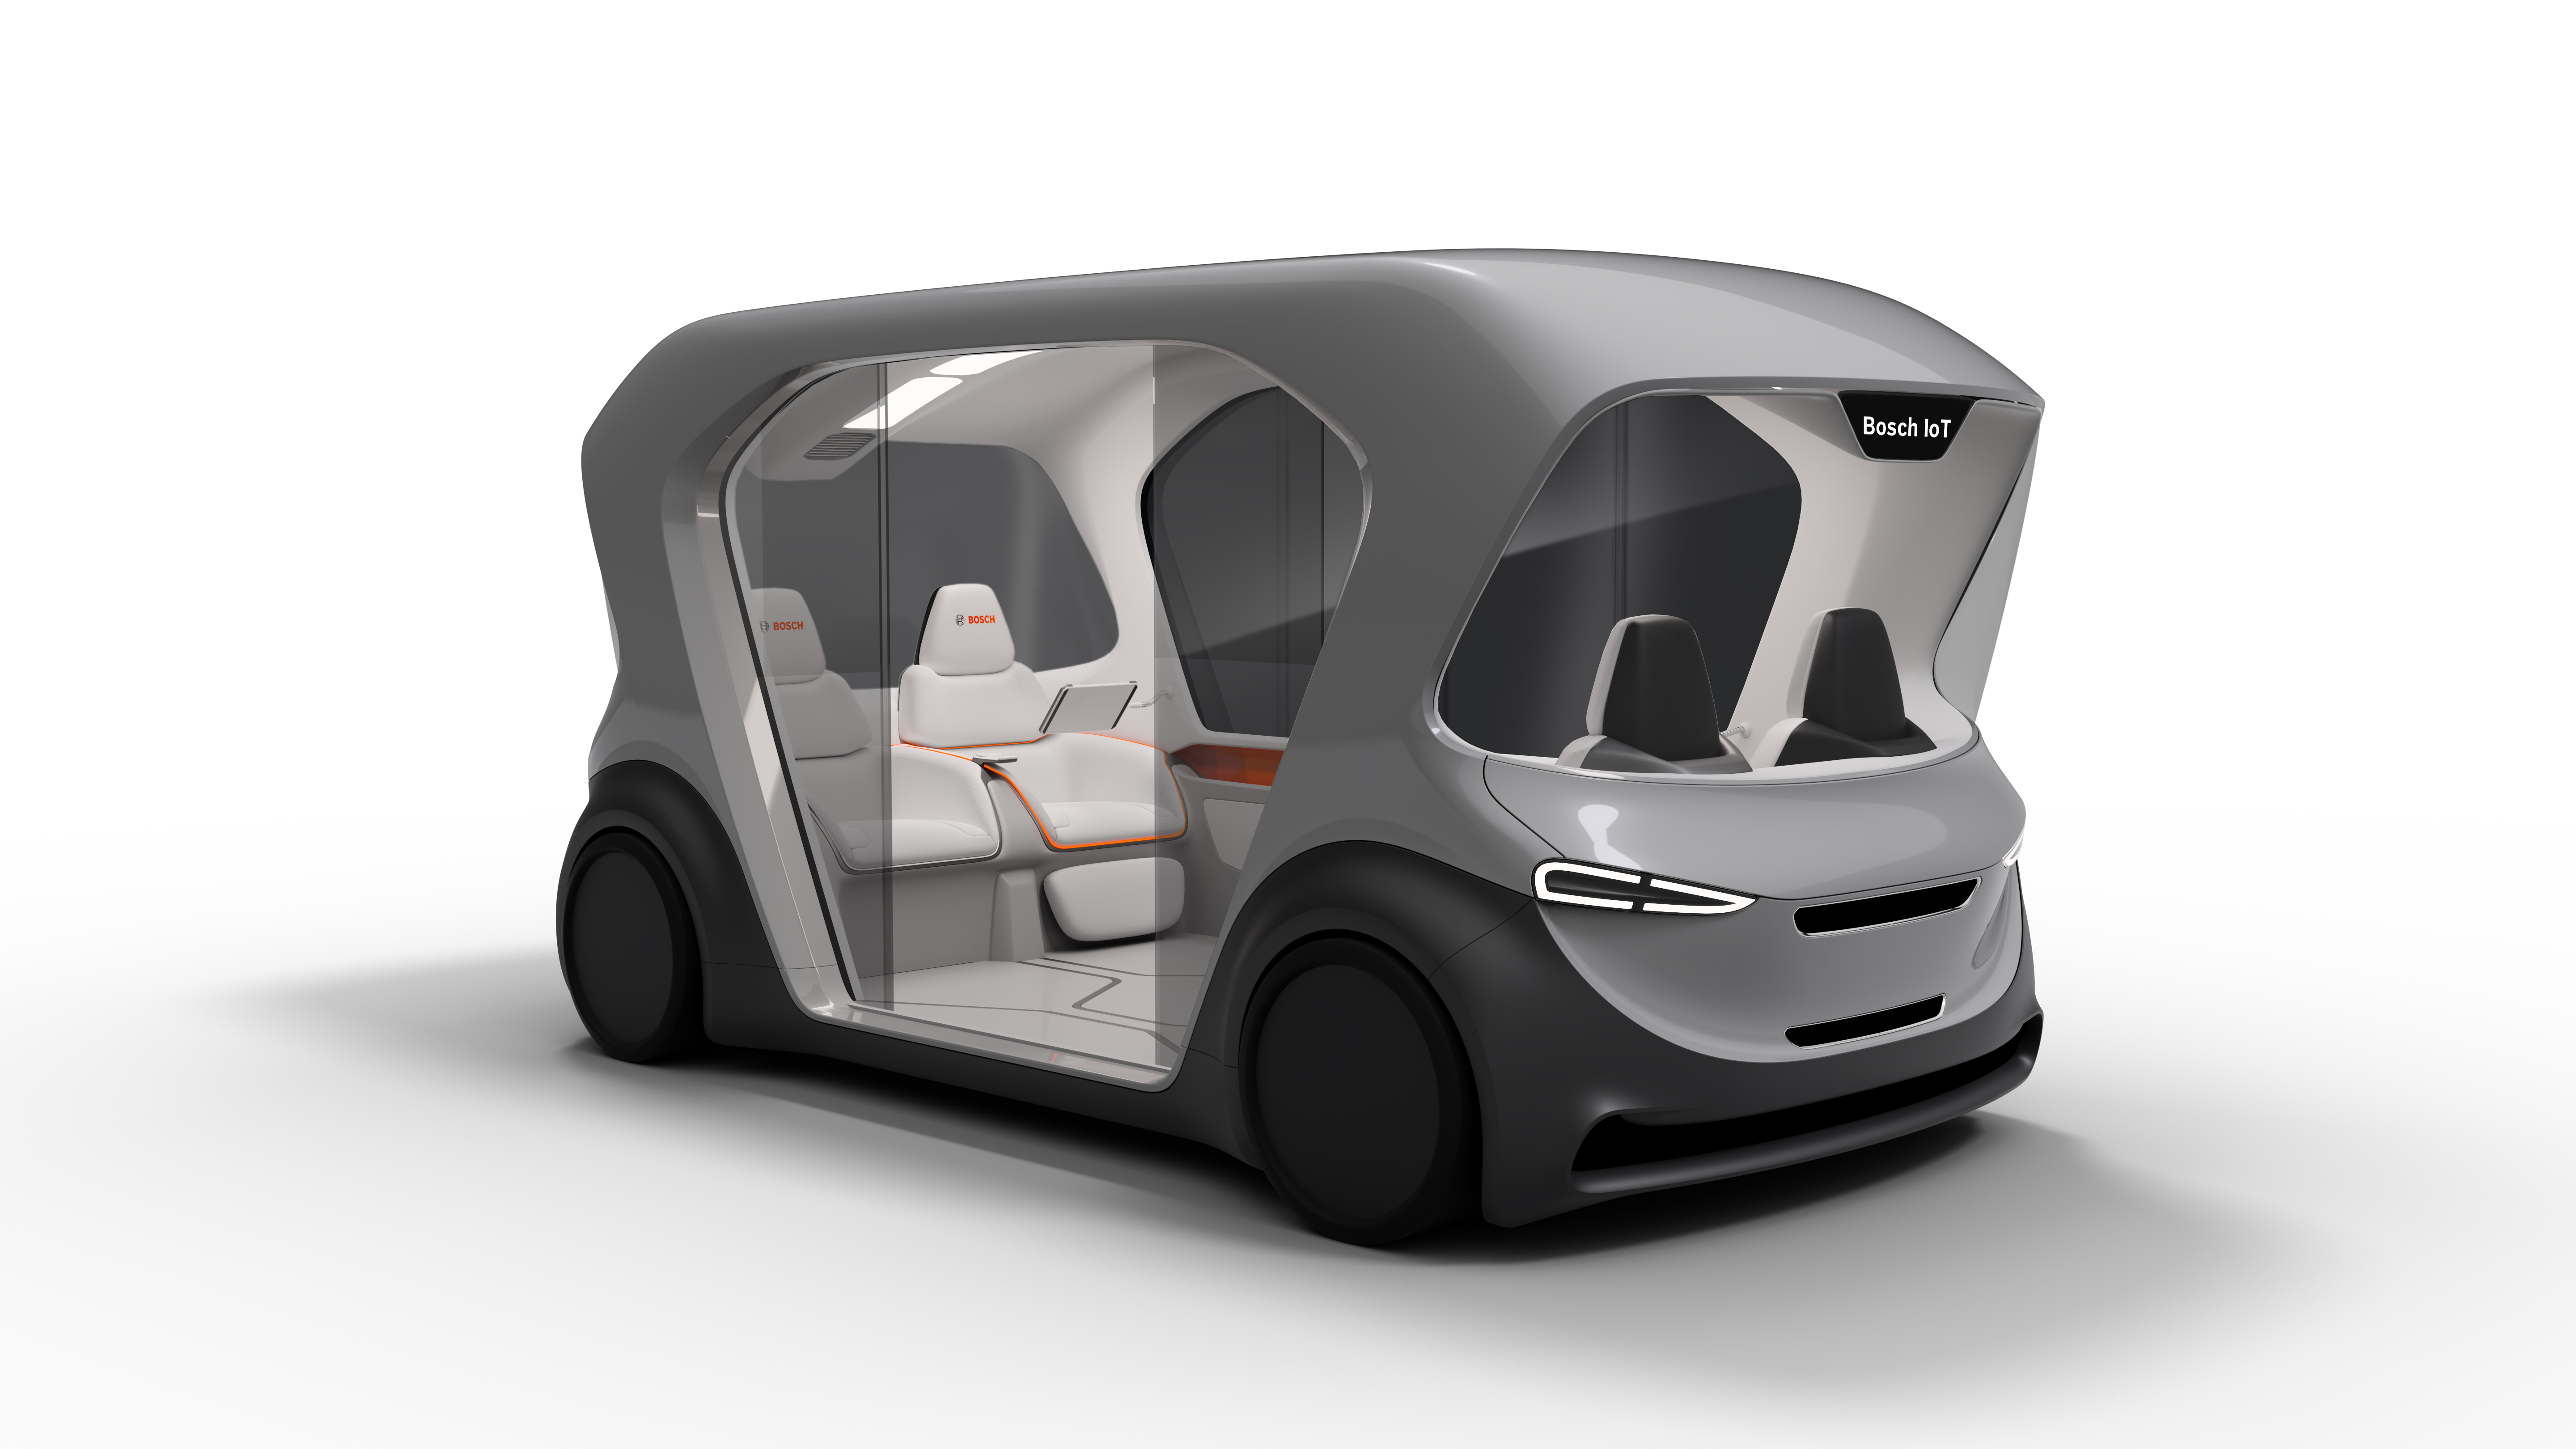 Weltpremiere des neuen Shuttle-Konzeptfahrzeugs von Bosch auf der CES 2019 in Las Vegas